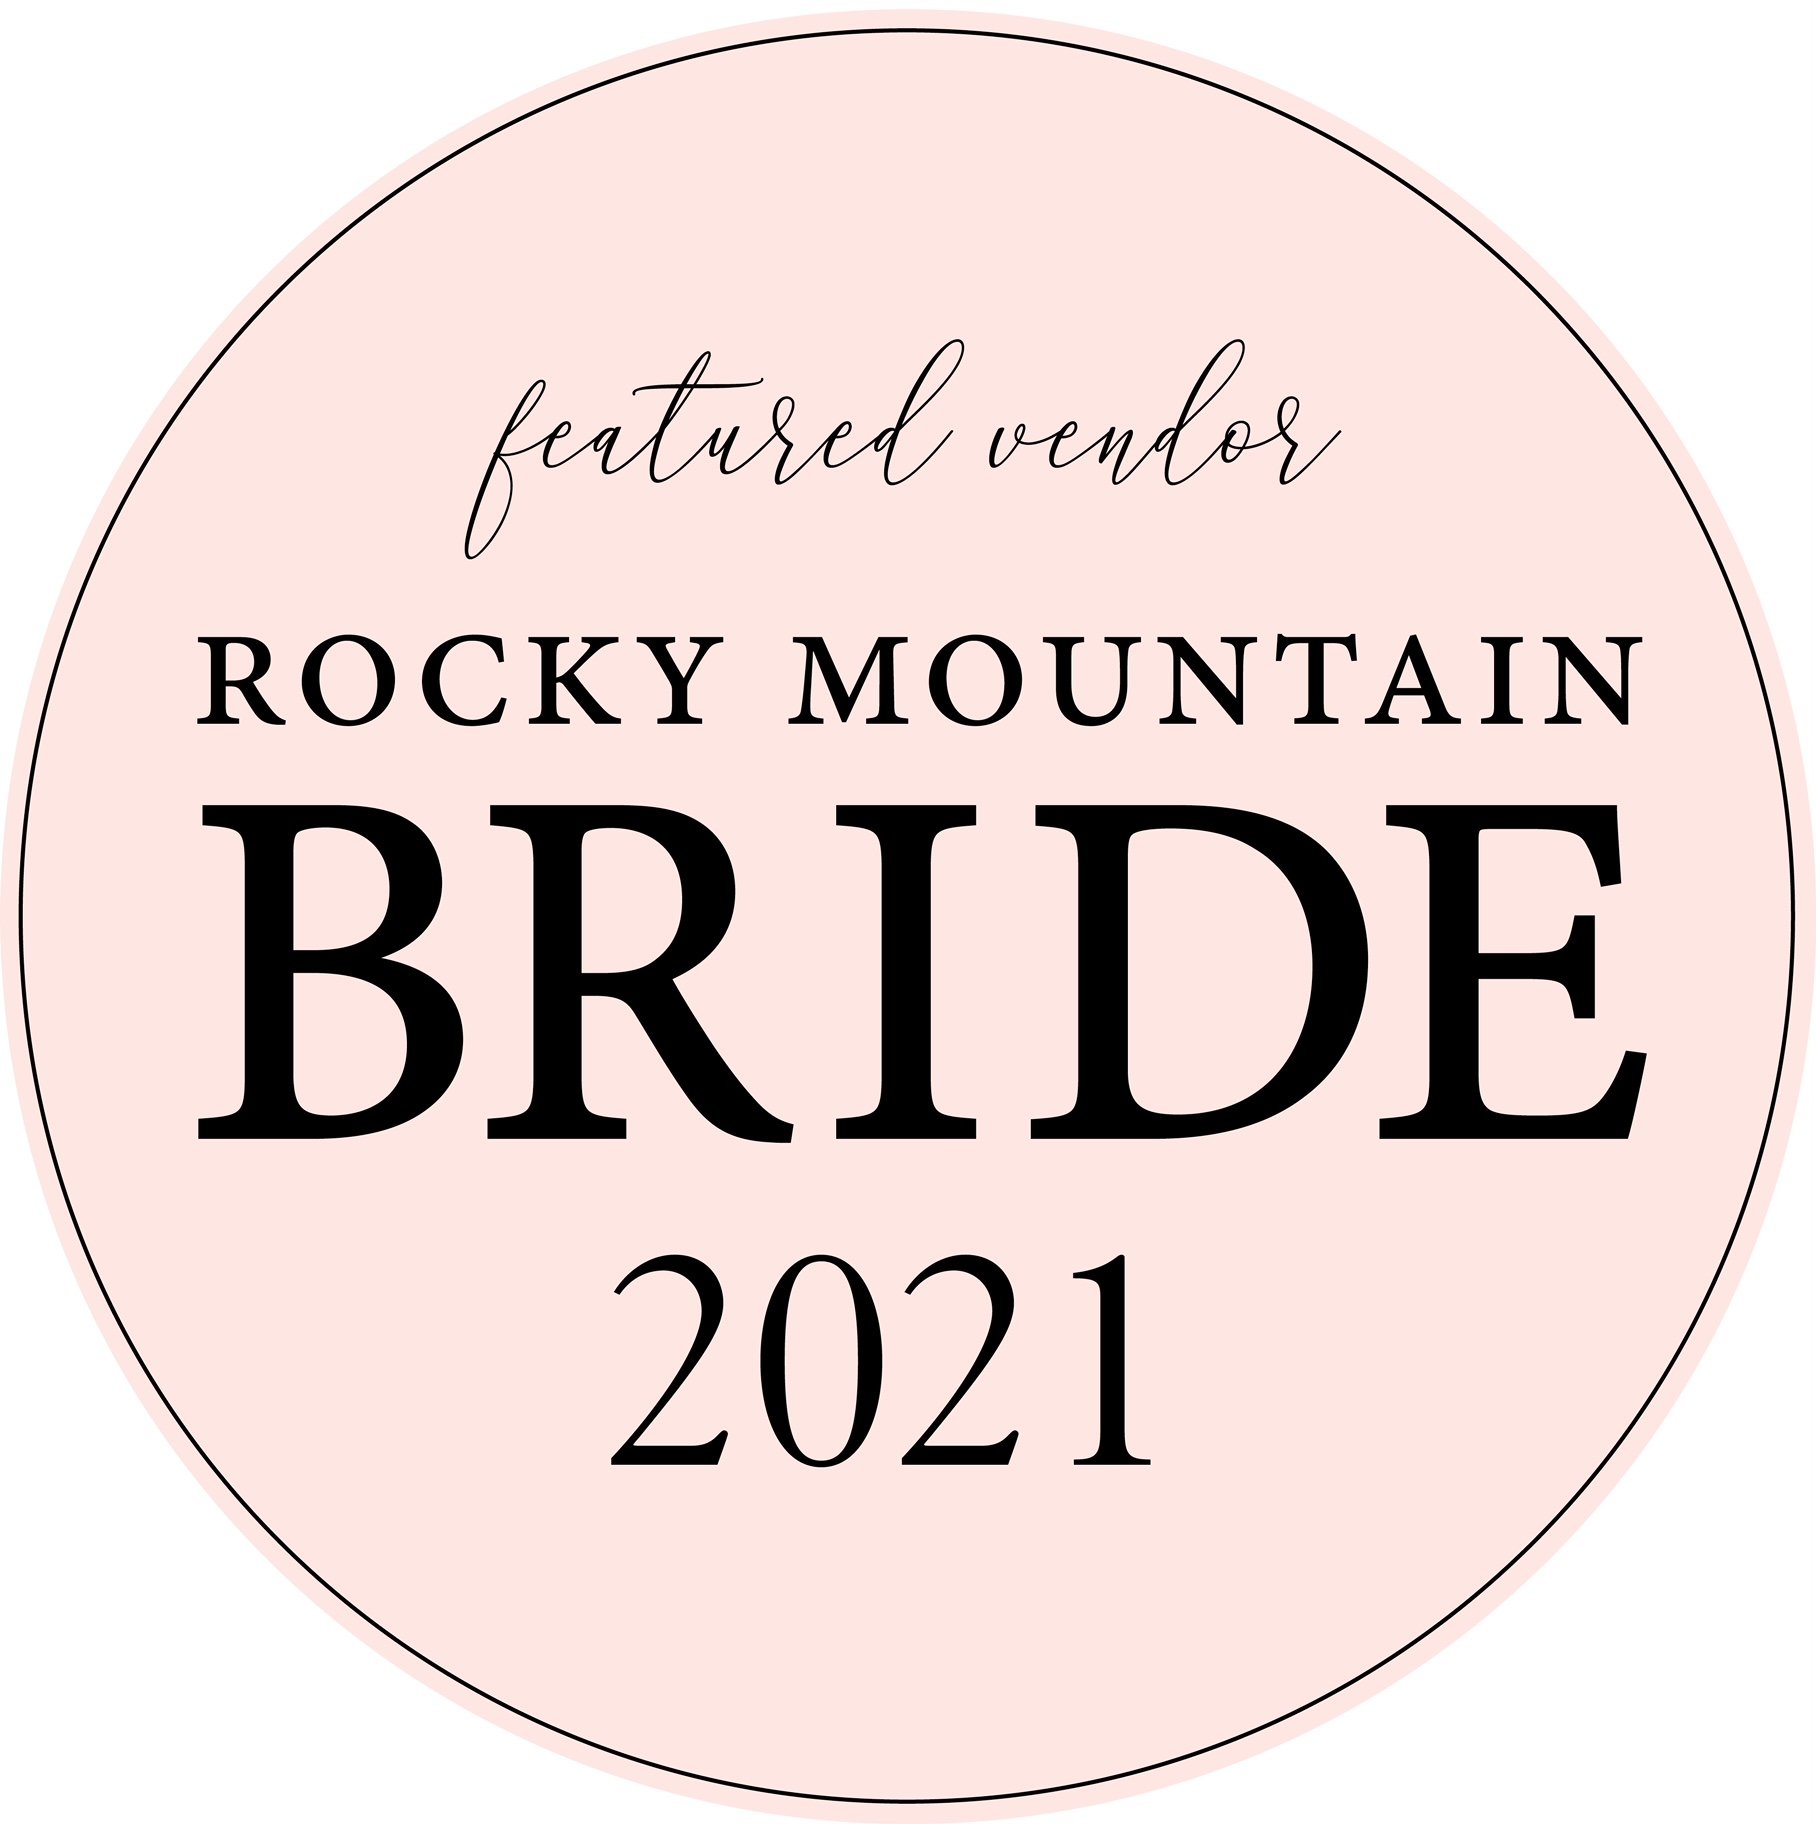 Rocky Mtn Bride Pink logo.jpg